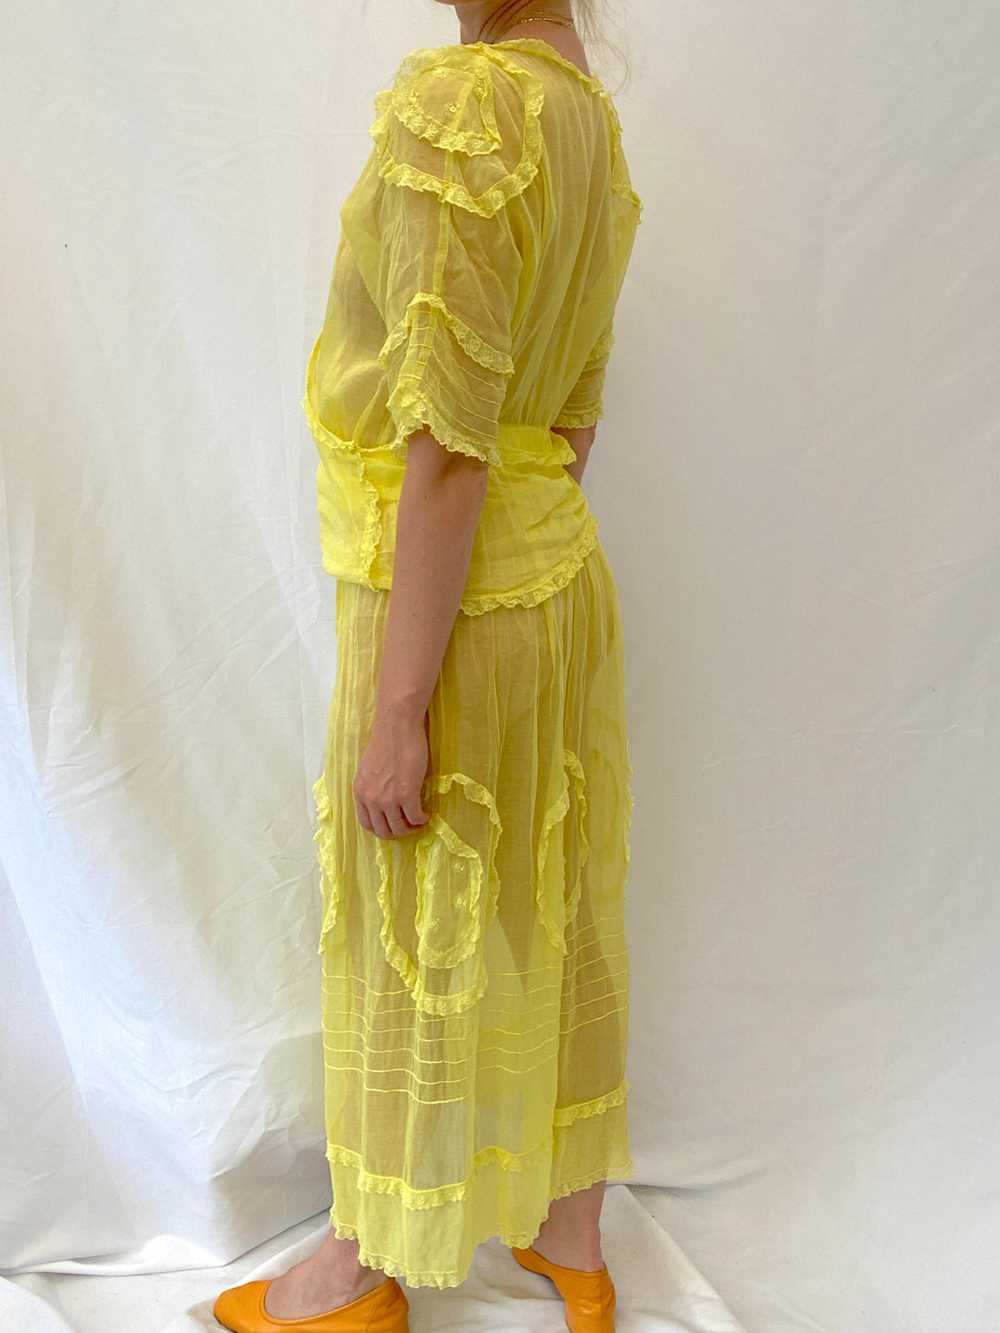 Hand Dyed Yellow Edwardian Organza Dress - image 7